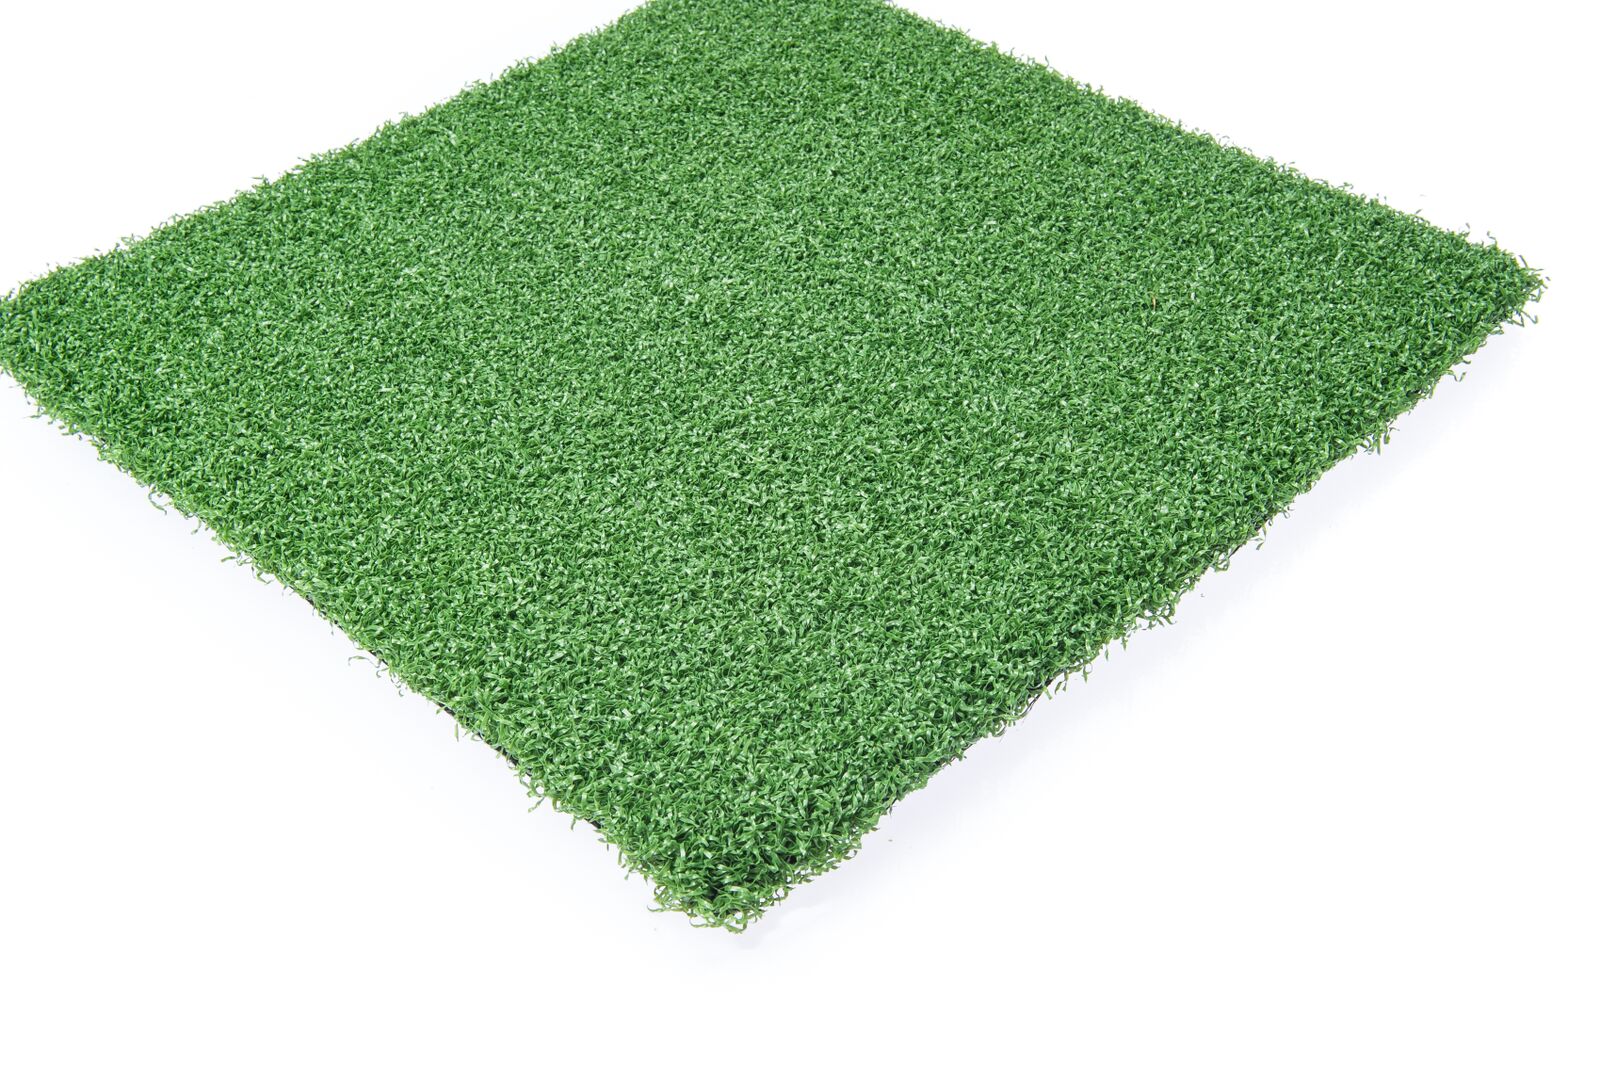 Grass price. Artificial grass Price. Паттинг Грин. Artificial grass at School.